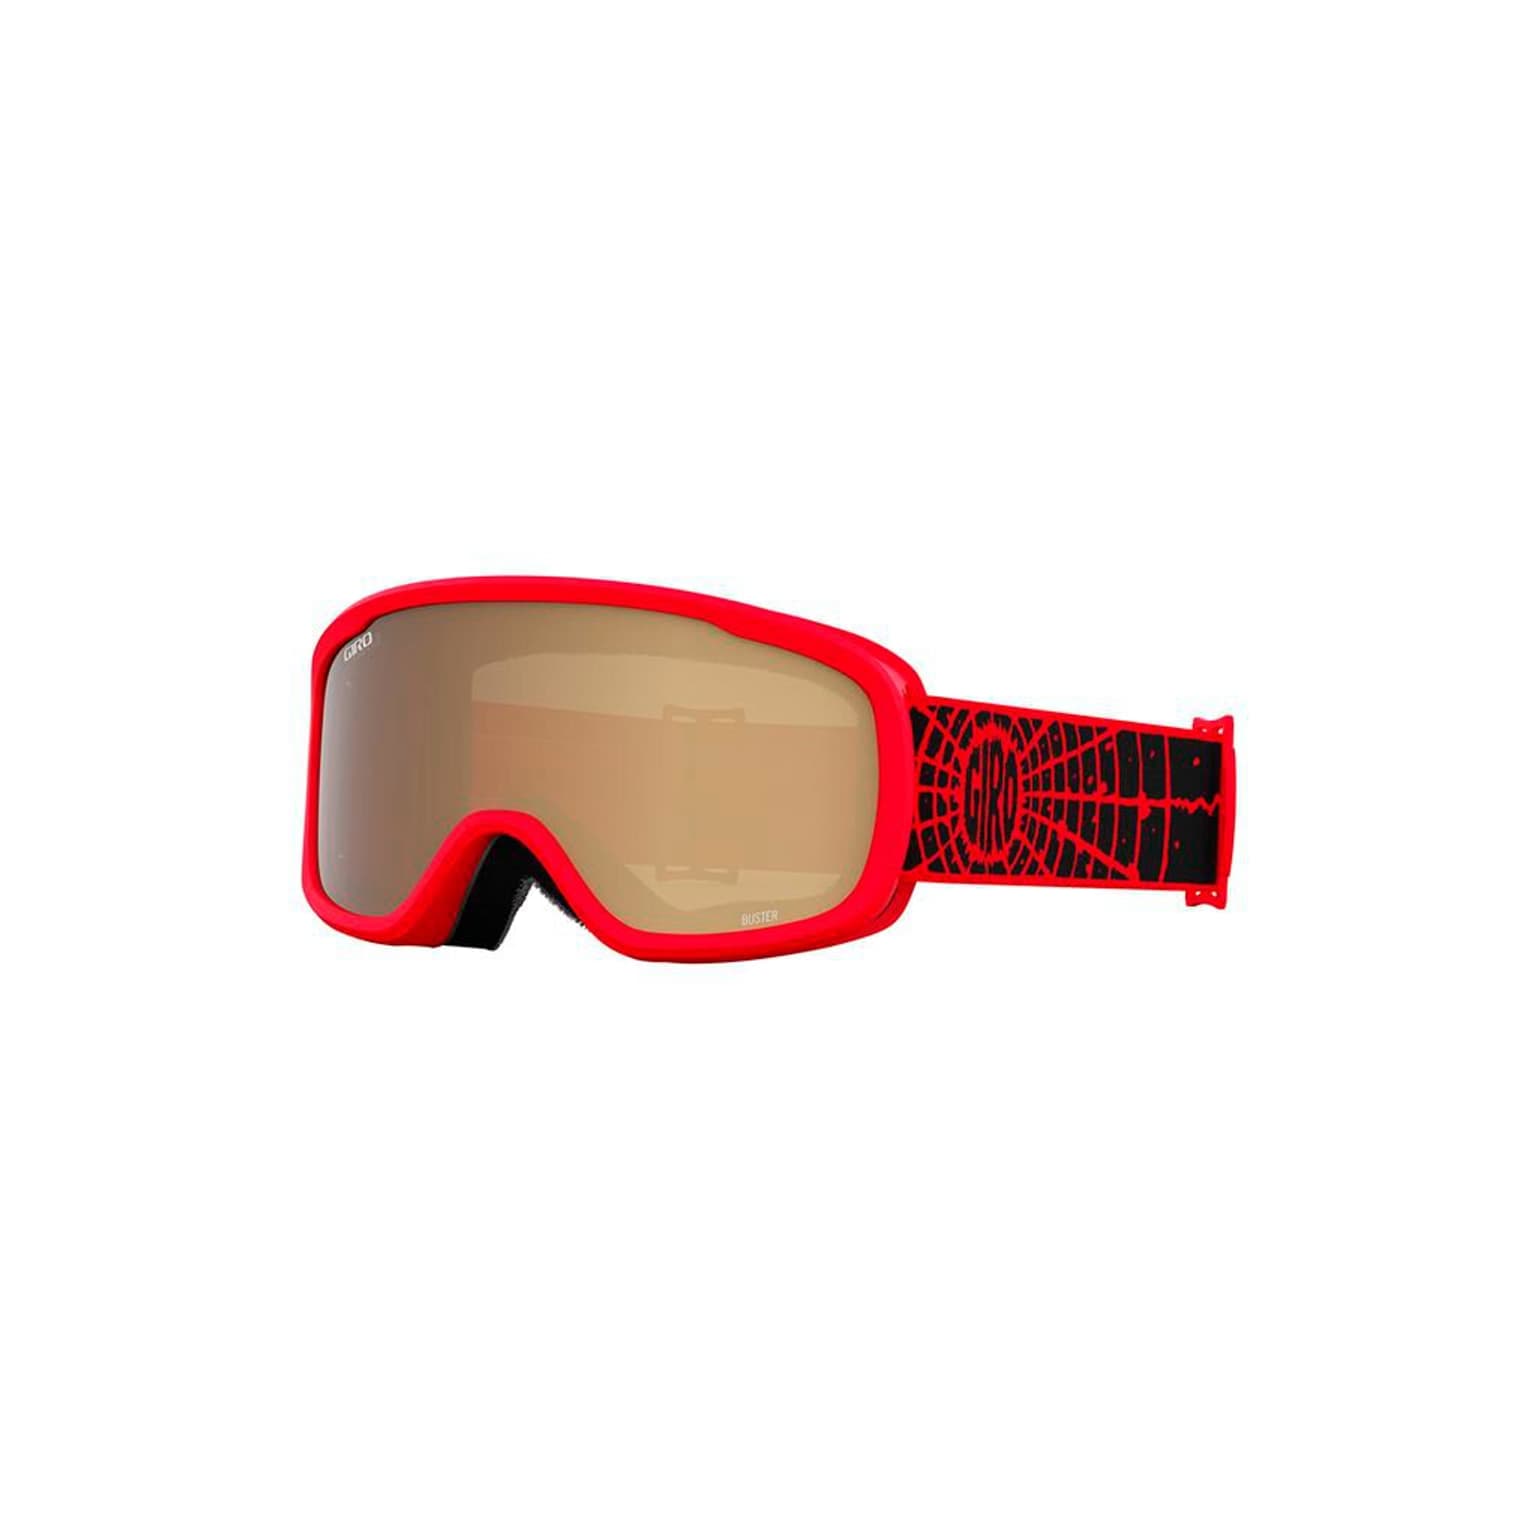 Giro Giro Buster Basic Goggle Masque de ski rouge-fonce 1